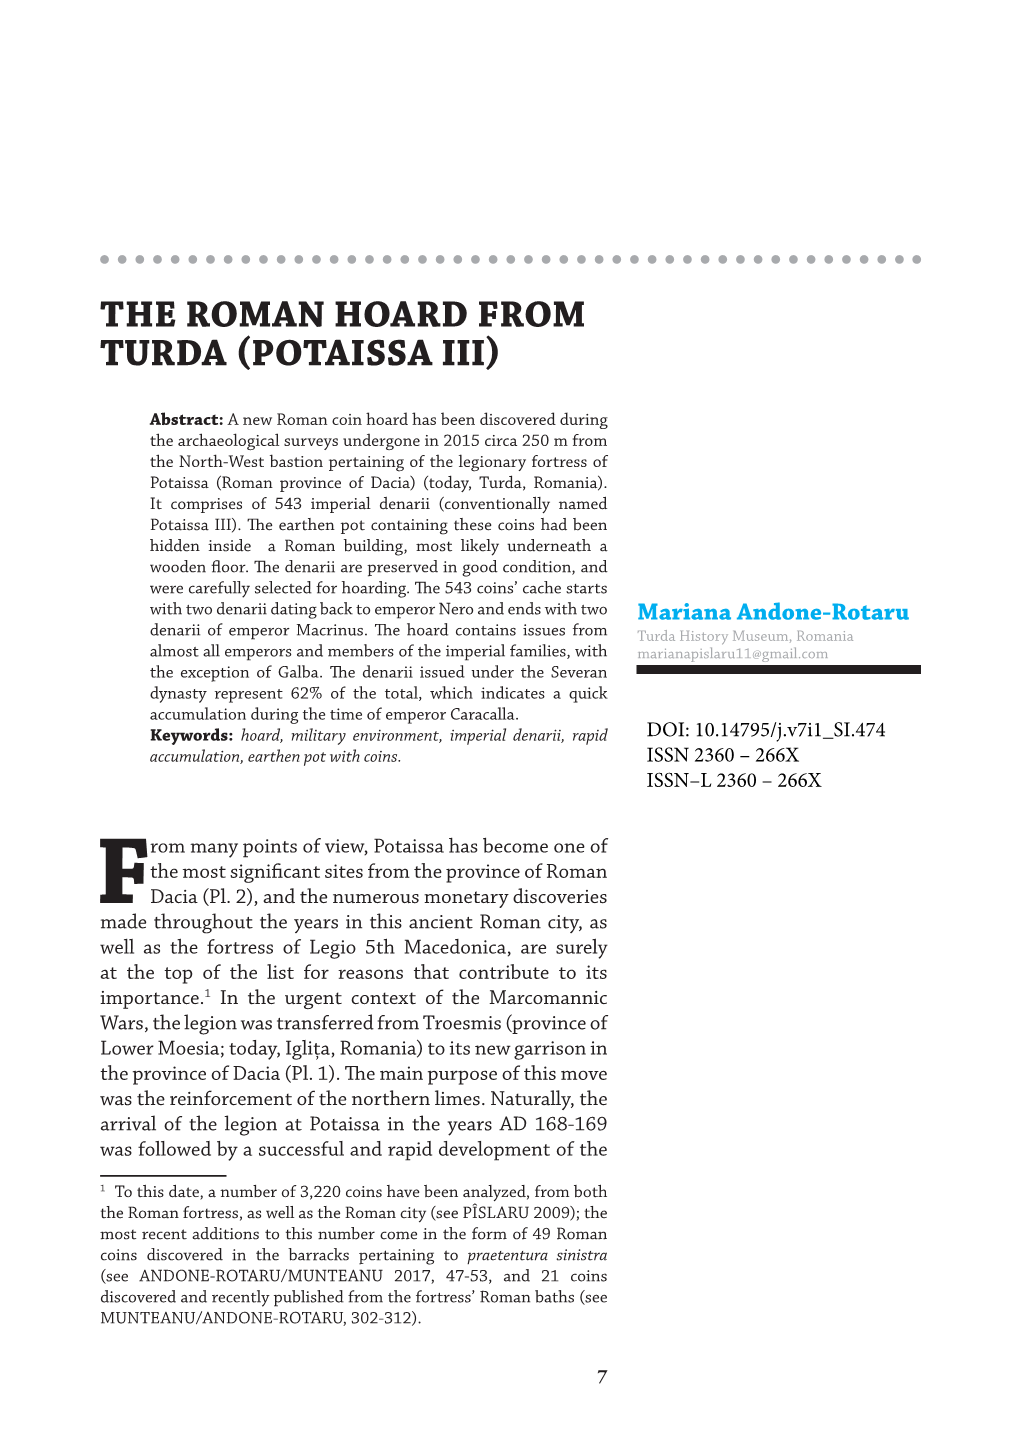 The Roman Hoard from Turda (Potaissa Iii)